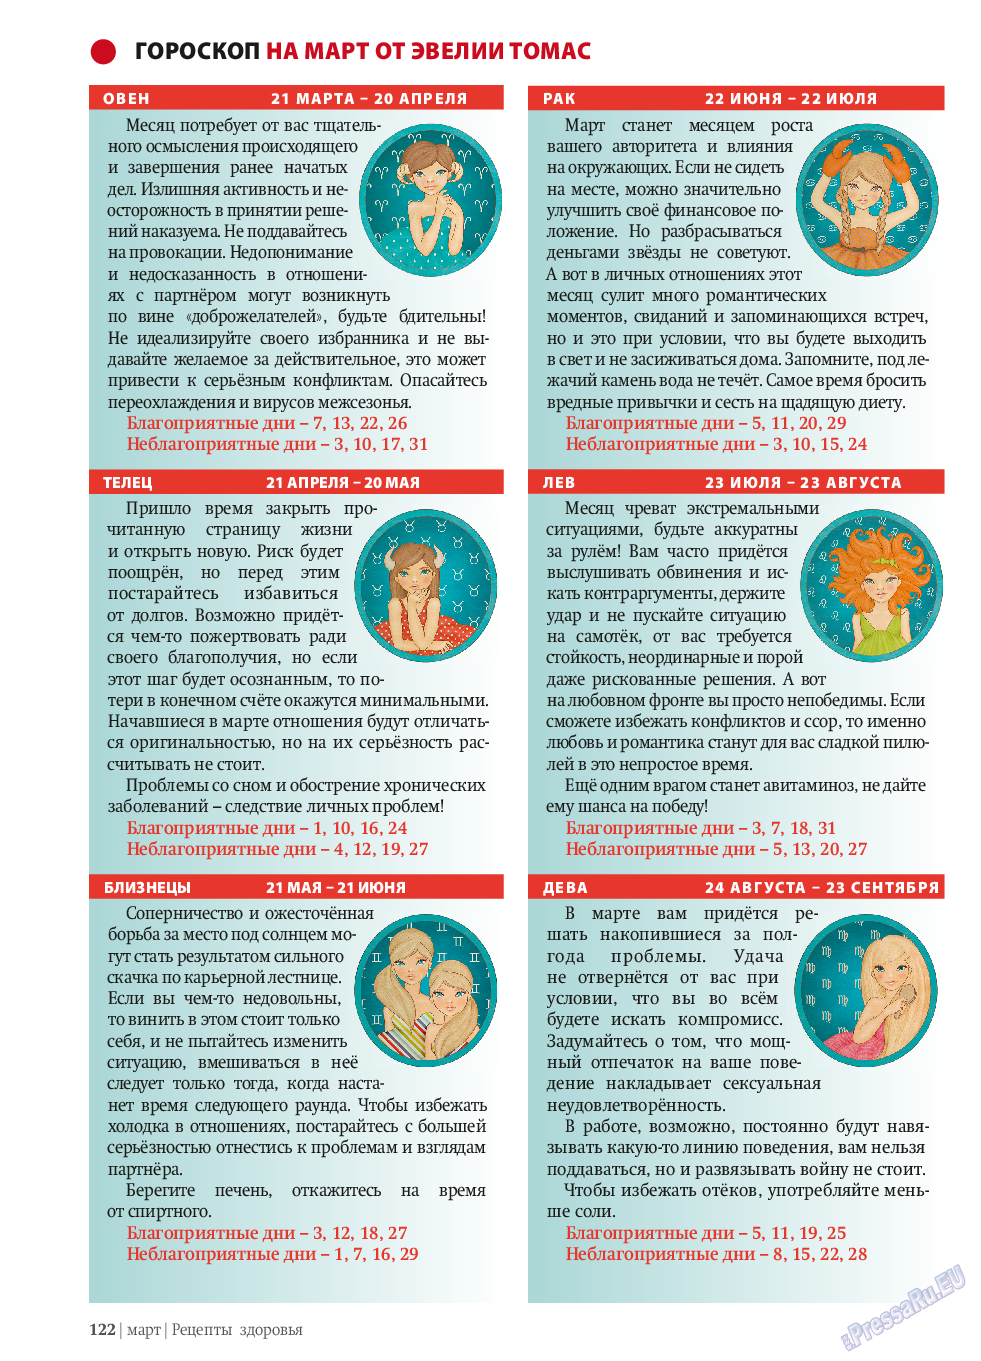 Рецепты здоровья, журнал. 2014 №58 стр.122